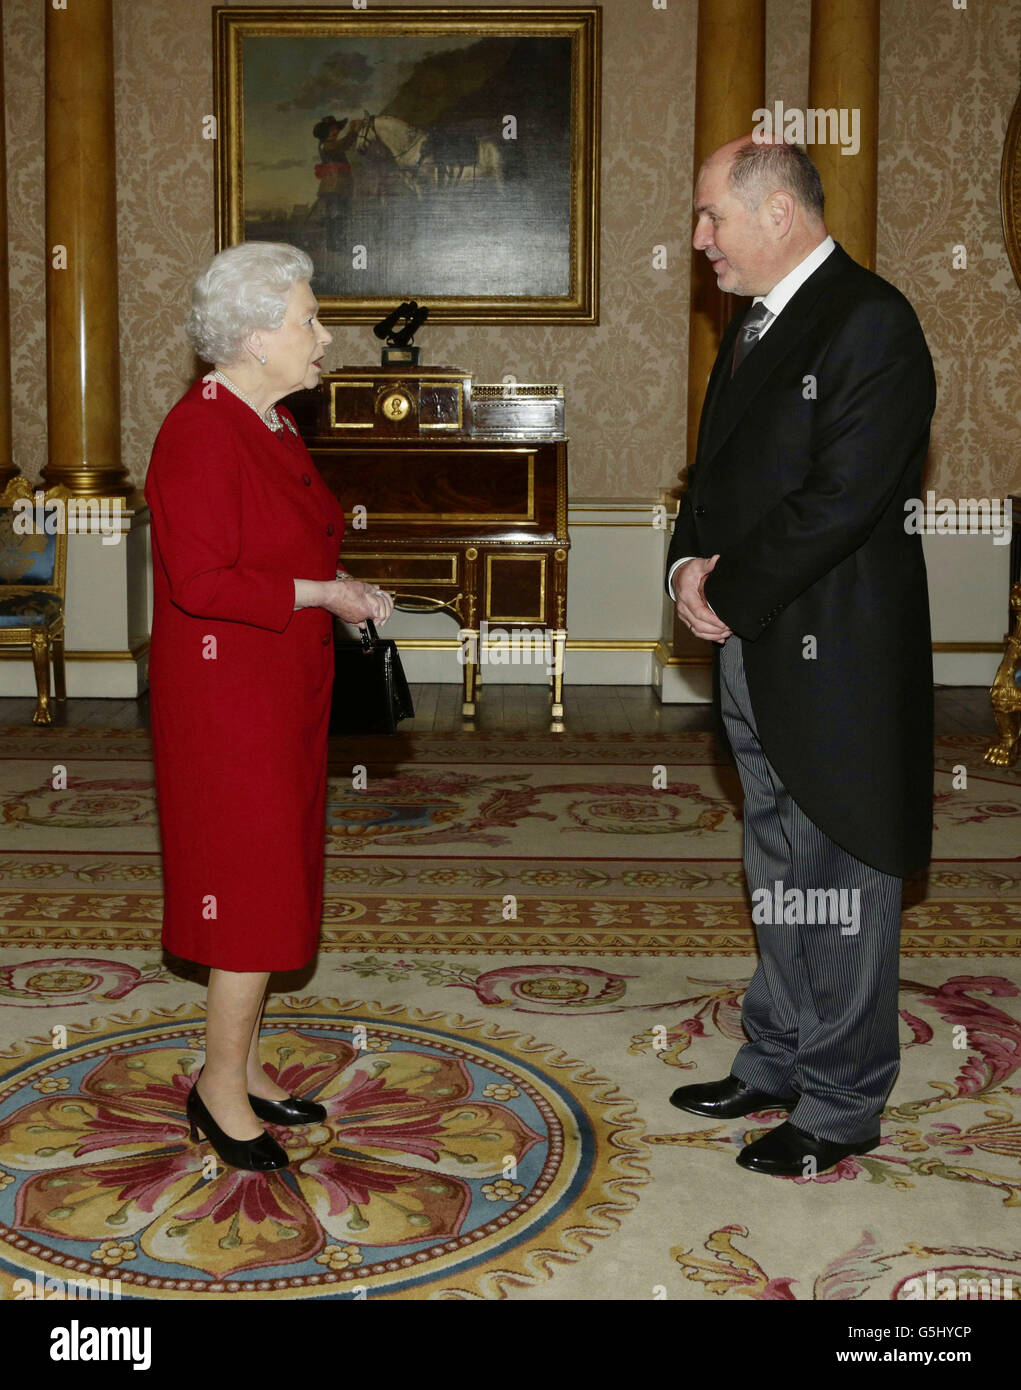 Mustafa Mujezinovic, ambasciatore di Bosnia-Erzegovina, presenta le sue credenziali durante un'udienza privata con la Regina Elisabetta II, durante una visita a Buckingham Palace, Londra. Foto Stock